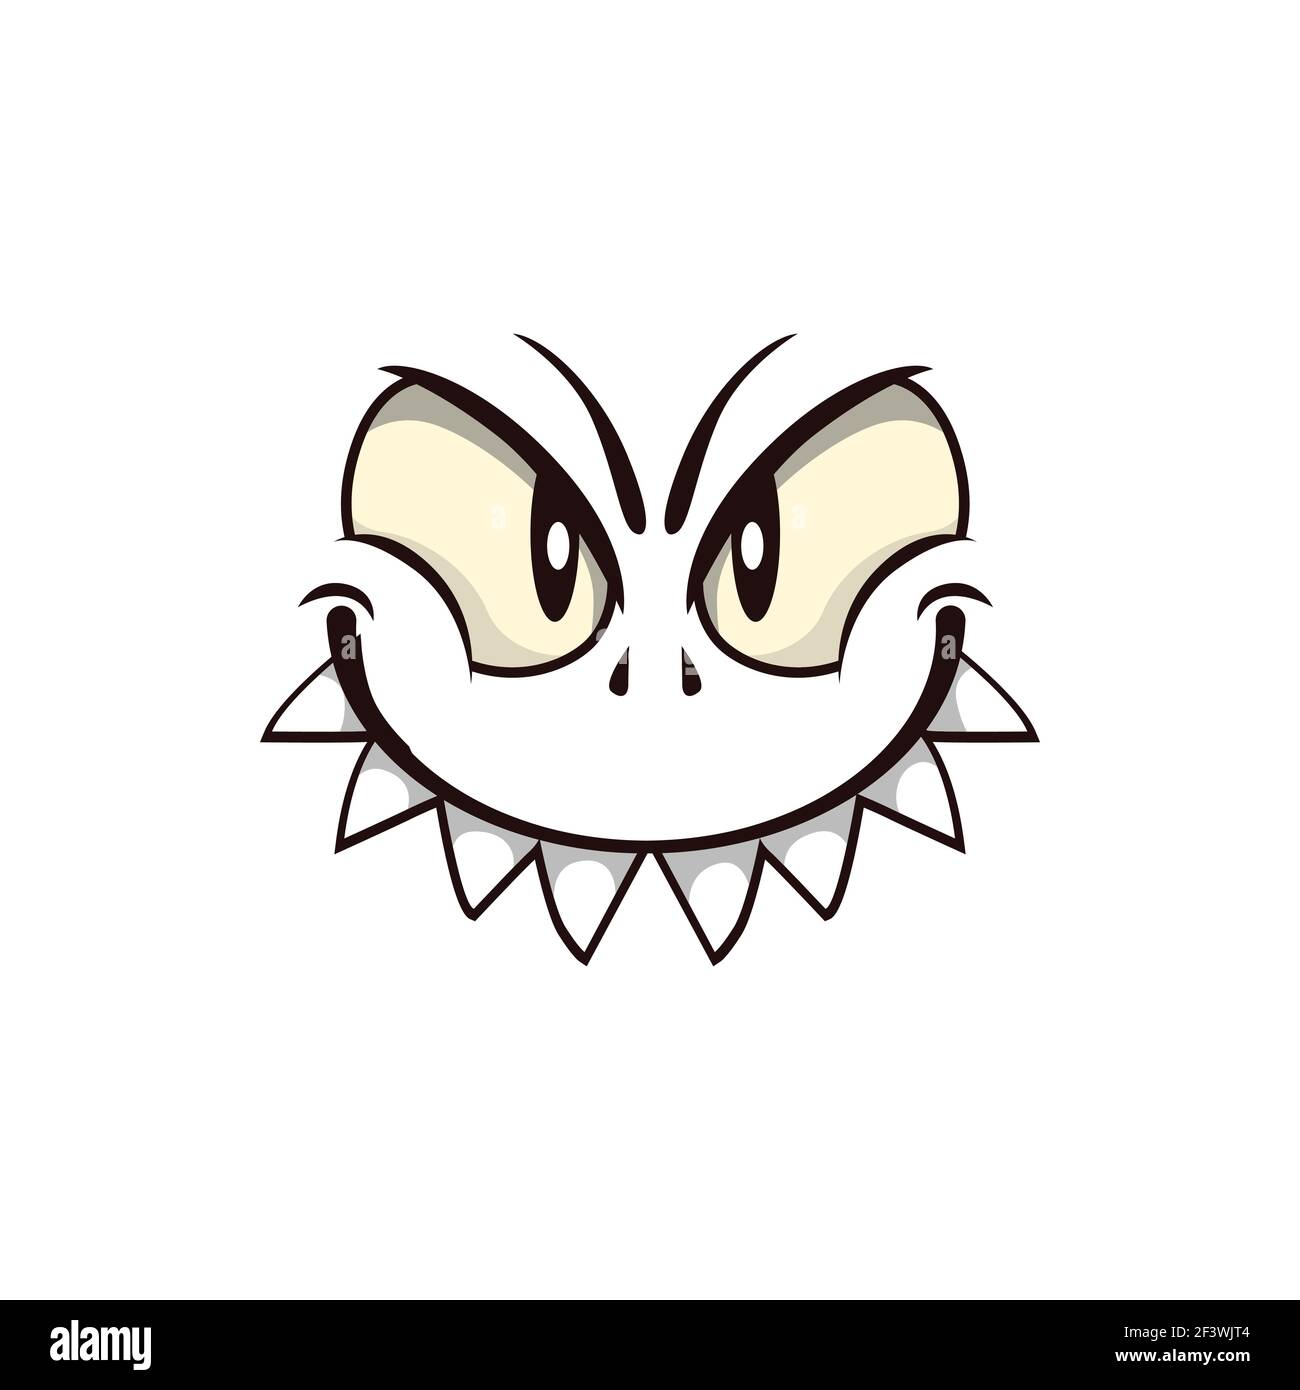 Monster Face Cartoon Vektor-Symbol, gruselige Kreatur Emotion mit  räuberischen Lächeln, geknickt böse Augen und toothy Mund. Halloween Geist,  fremd oder gruselig Stock-Vektorgrafik - Alamy